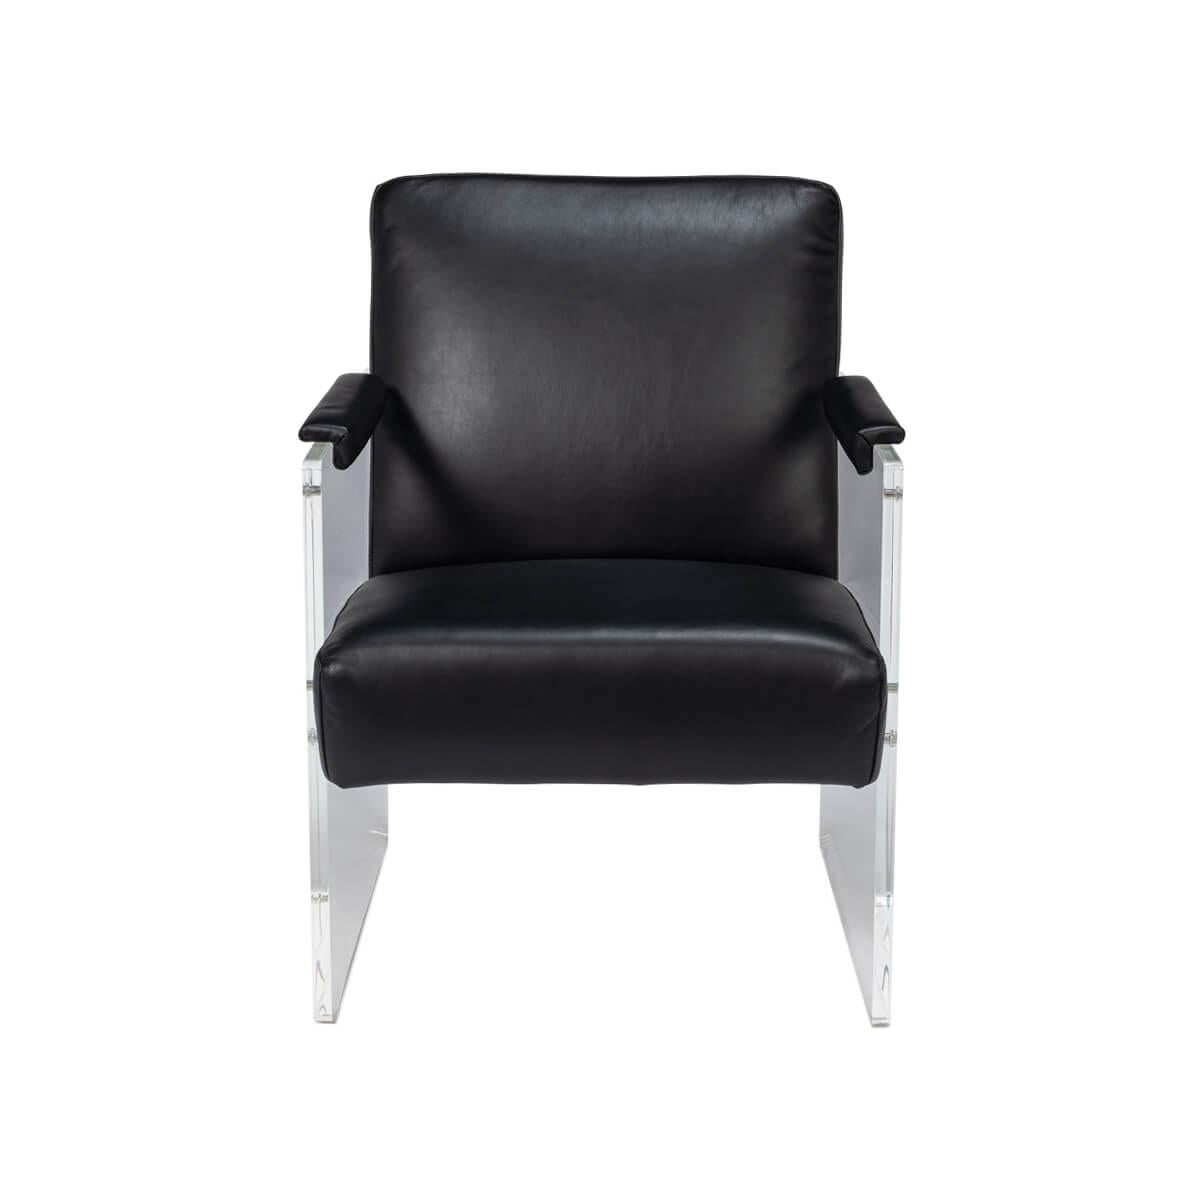 Eine kühne Verschmelzung von avantgardistischem Stil und klassischem Komfort. Sitz und Rückenlehne aus schwarzem Onyx-Leder sorgen für ein luxuriöses Sitzerlebnis, während die Seitenteile aus klarem Acryl den Eindruck erwecken, in der Luft zu